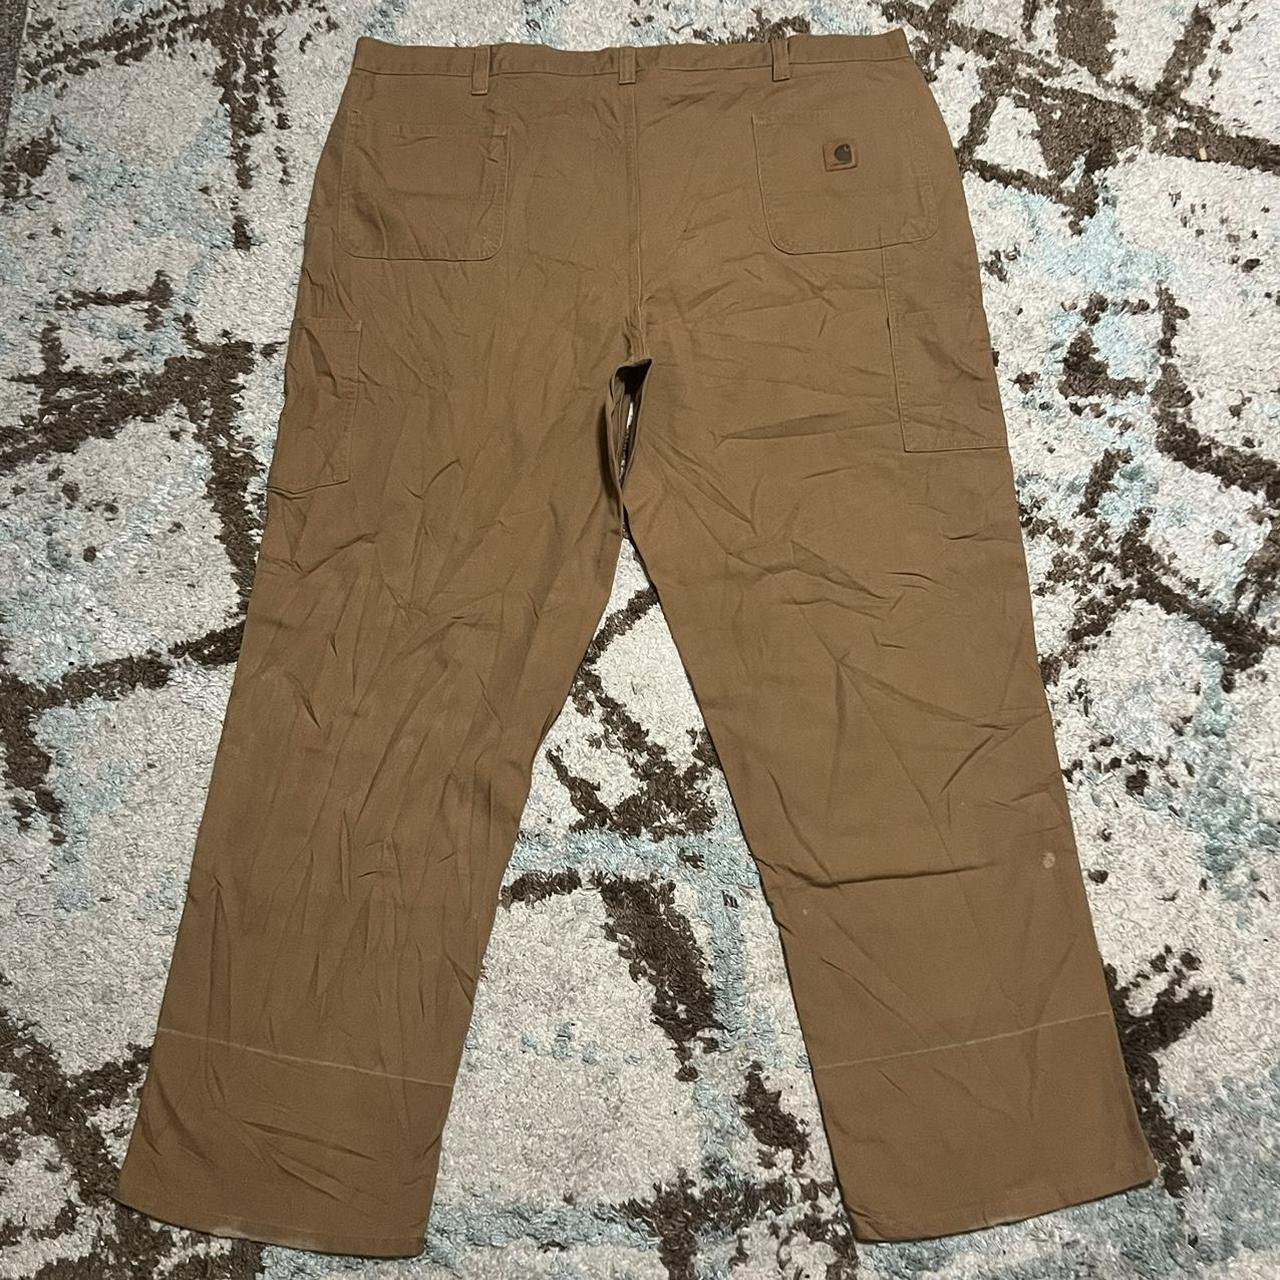 Carhartt Canvas Carpenter Pants Size 46x32 Brown... - Depop